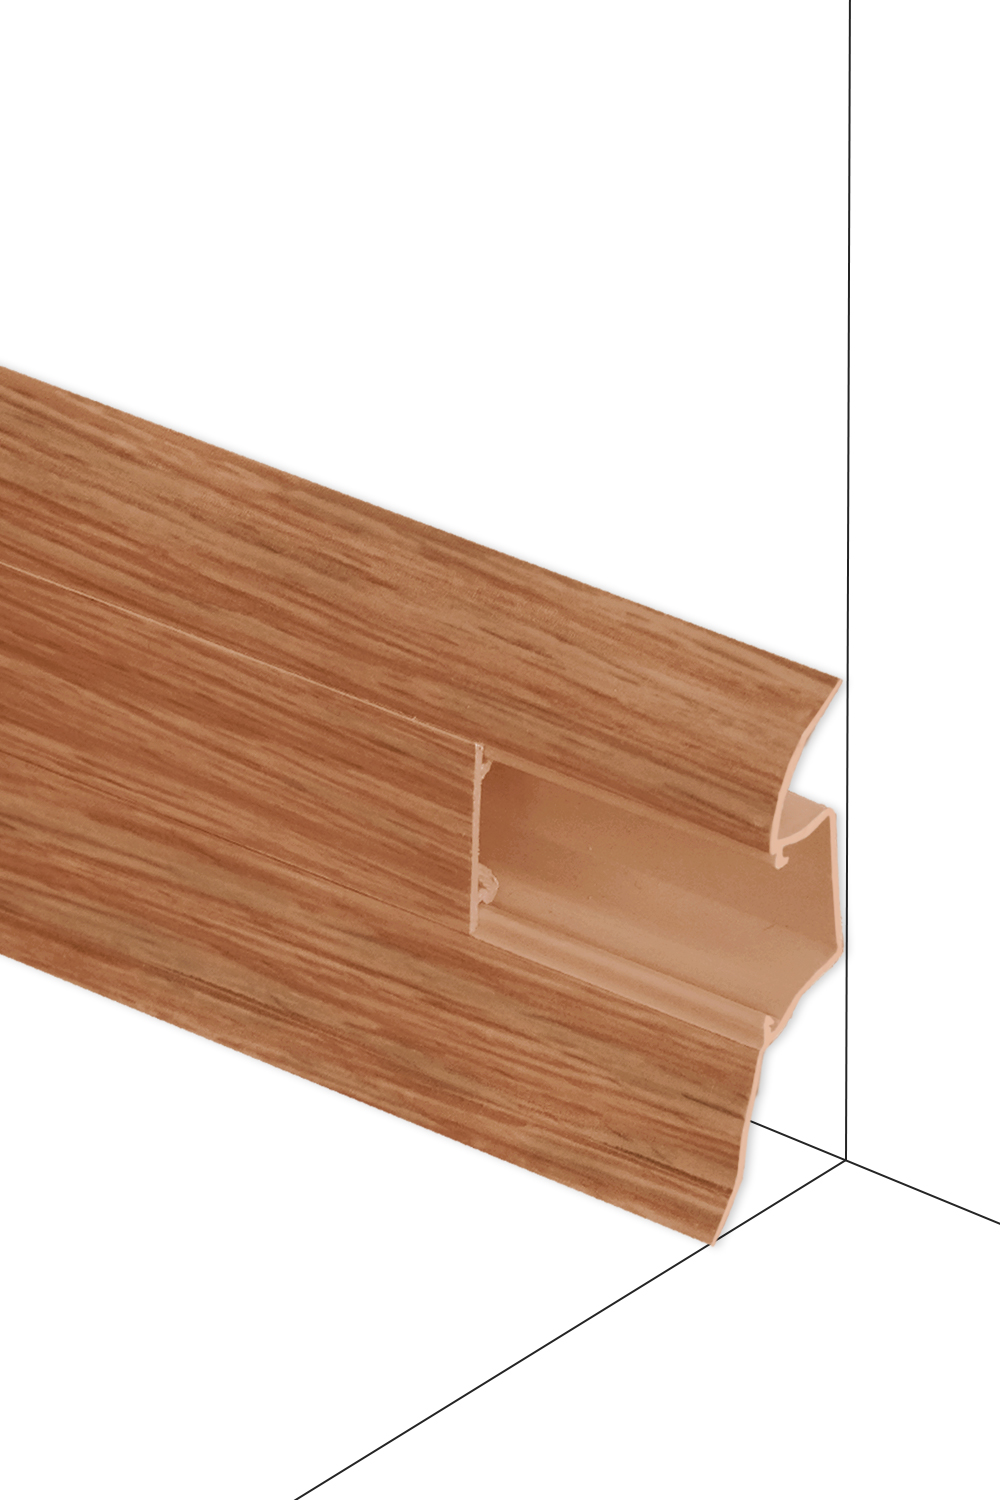 Podlahová lišta Döllken W138 - Třešeň Oxford - délka 250 cm Ukončení P 